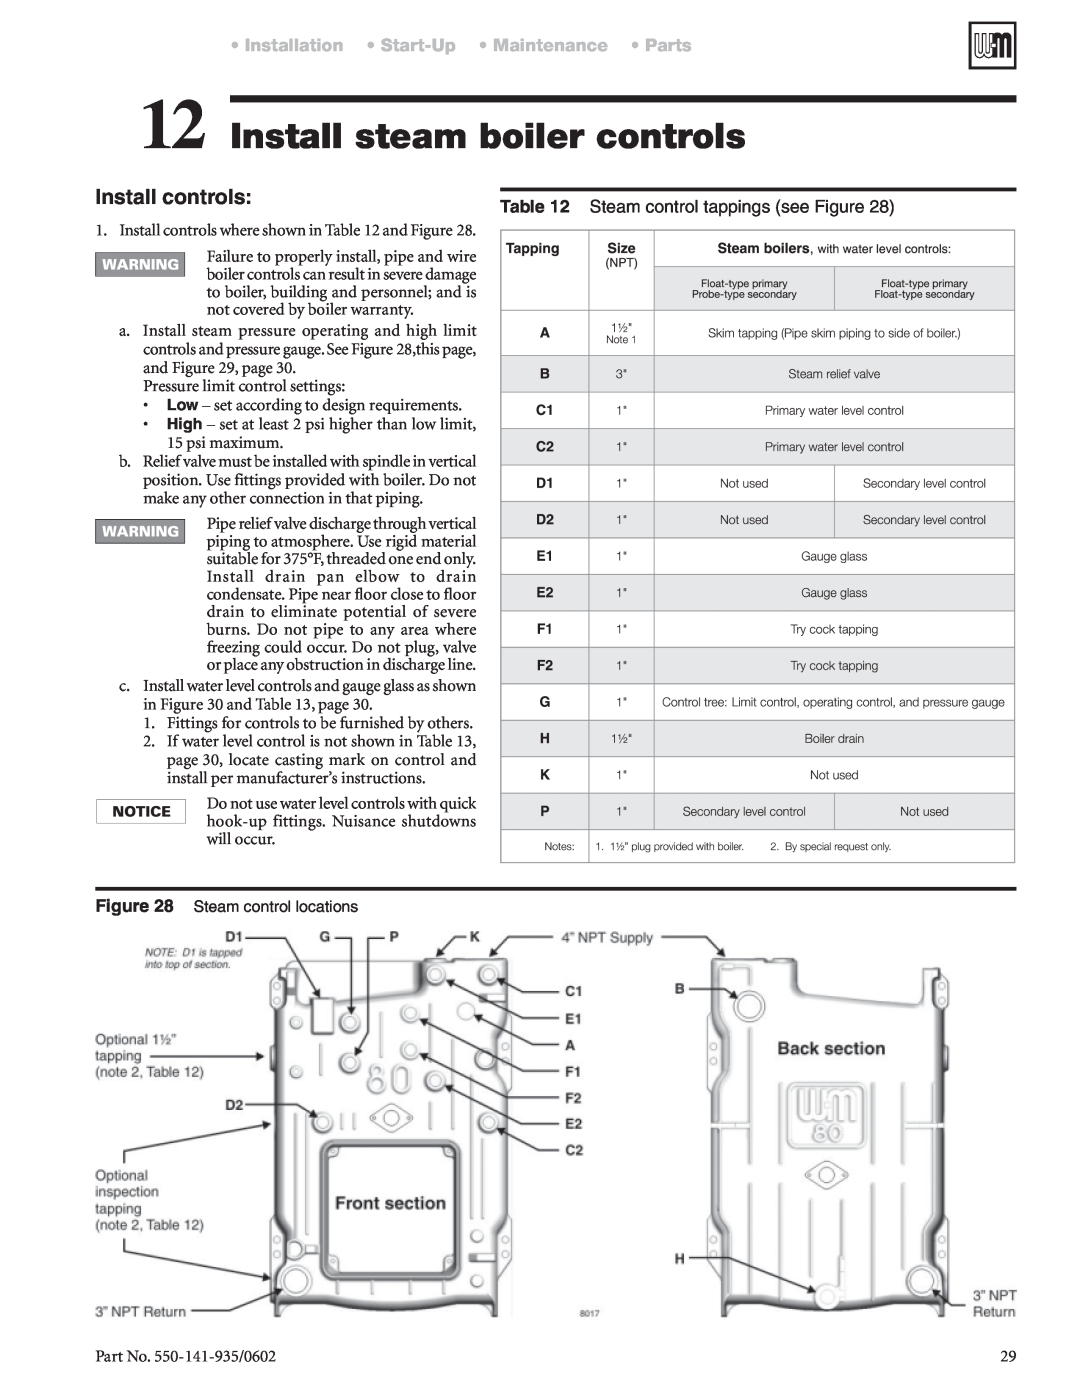 Weil-McLain 80 manual Install steam boiler controls, Install controls, Installation Start-Up Maintenance Parts 